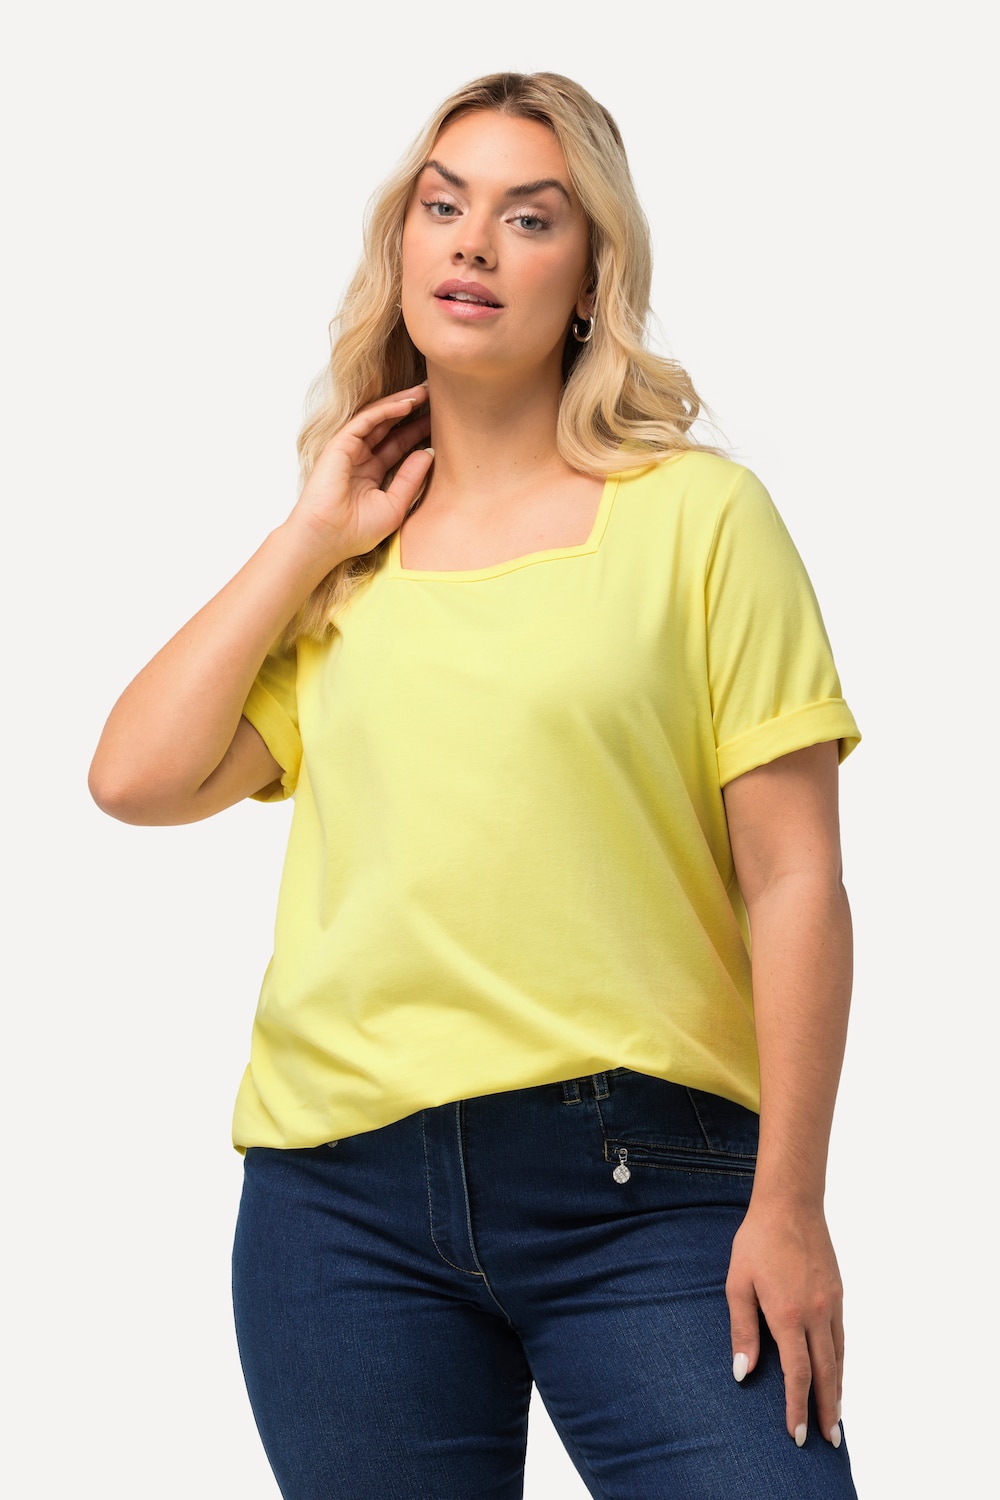 Grote Maten T-shirt, Dames, geel, Maat: 46/48, Katoen, Ulla Popken